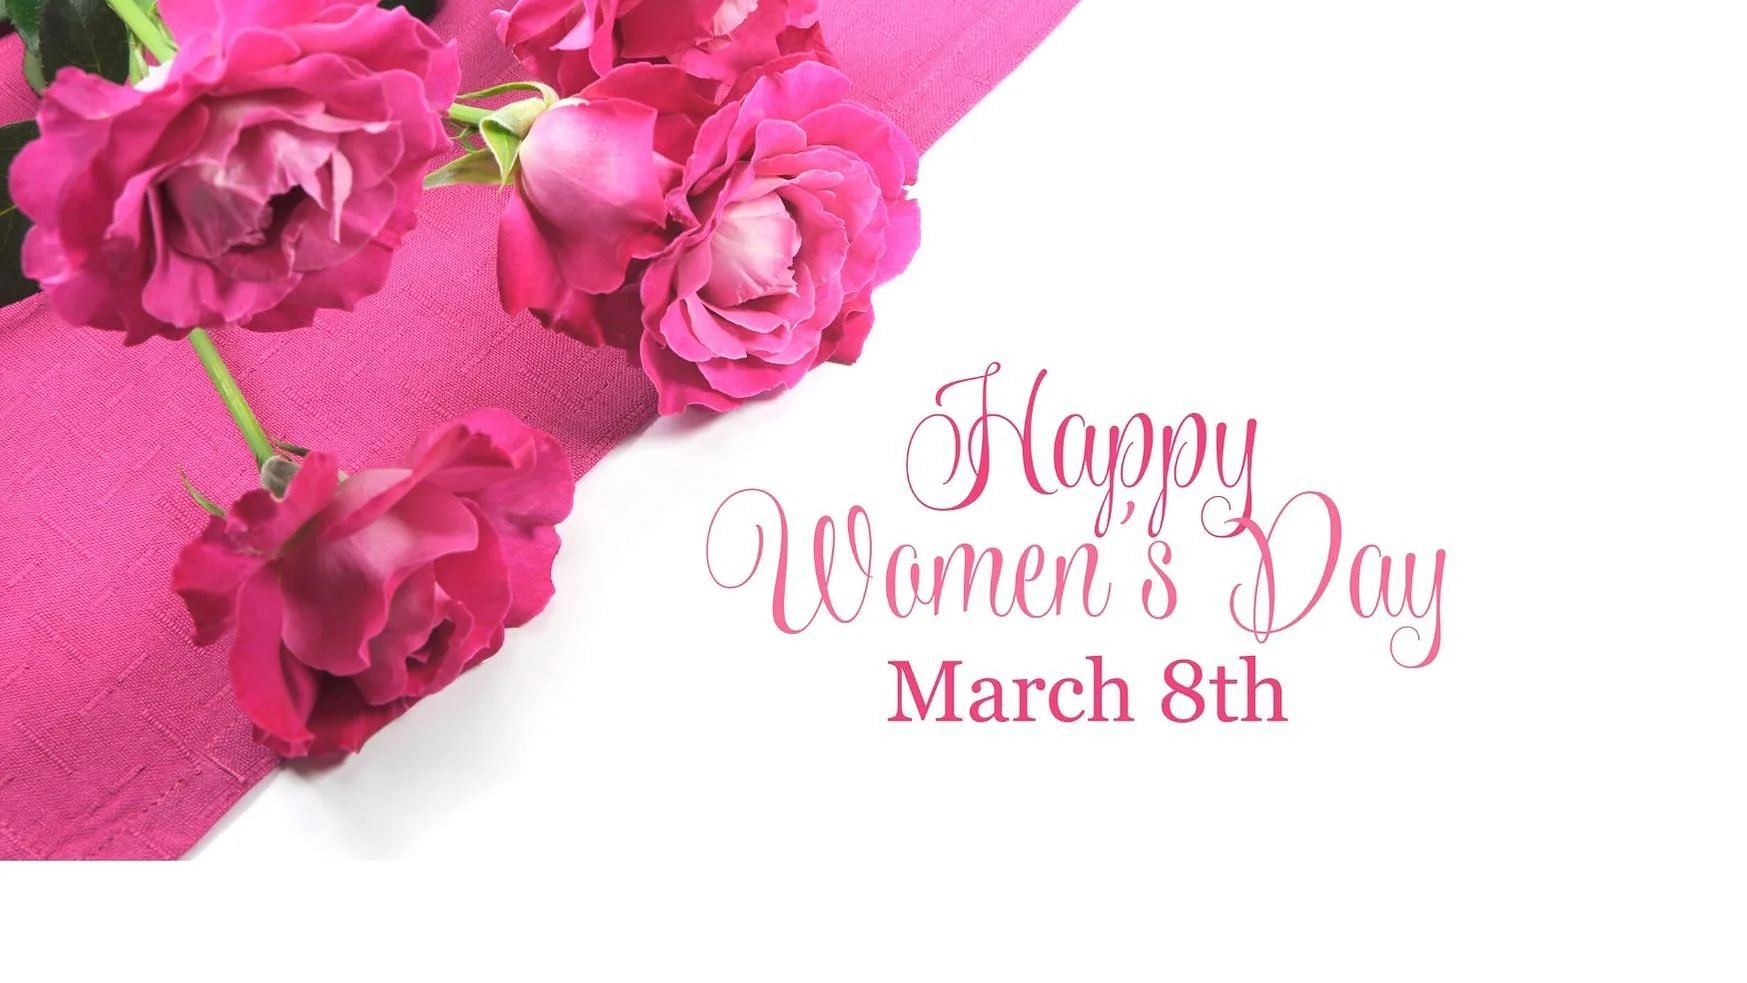 Happy Women’s Day ( Mahila, Nari Diwas) 2021 Wishes: महिला दिवस पर इन मैसेज से दें बधाई